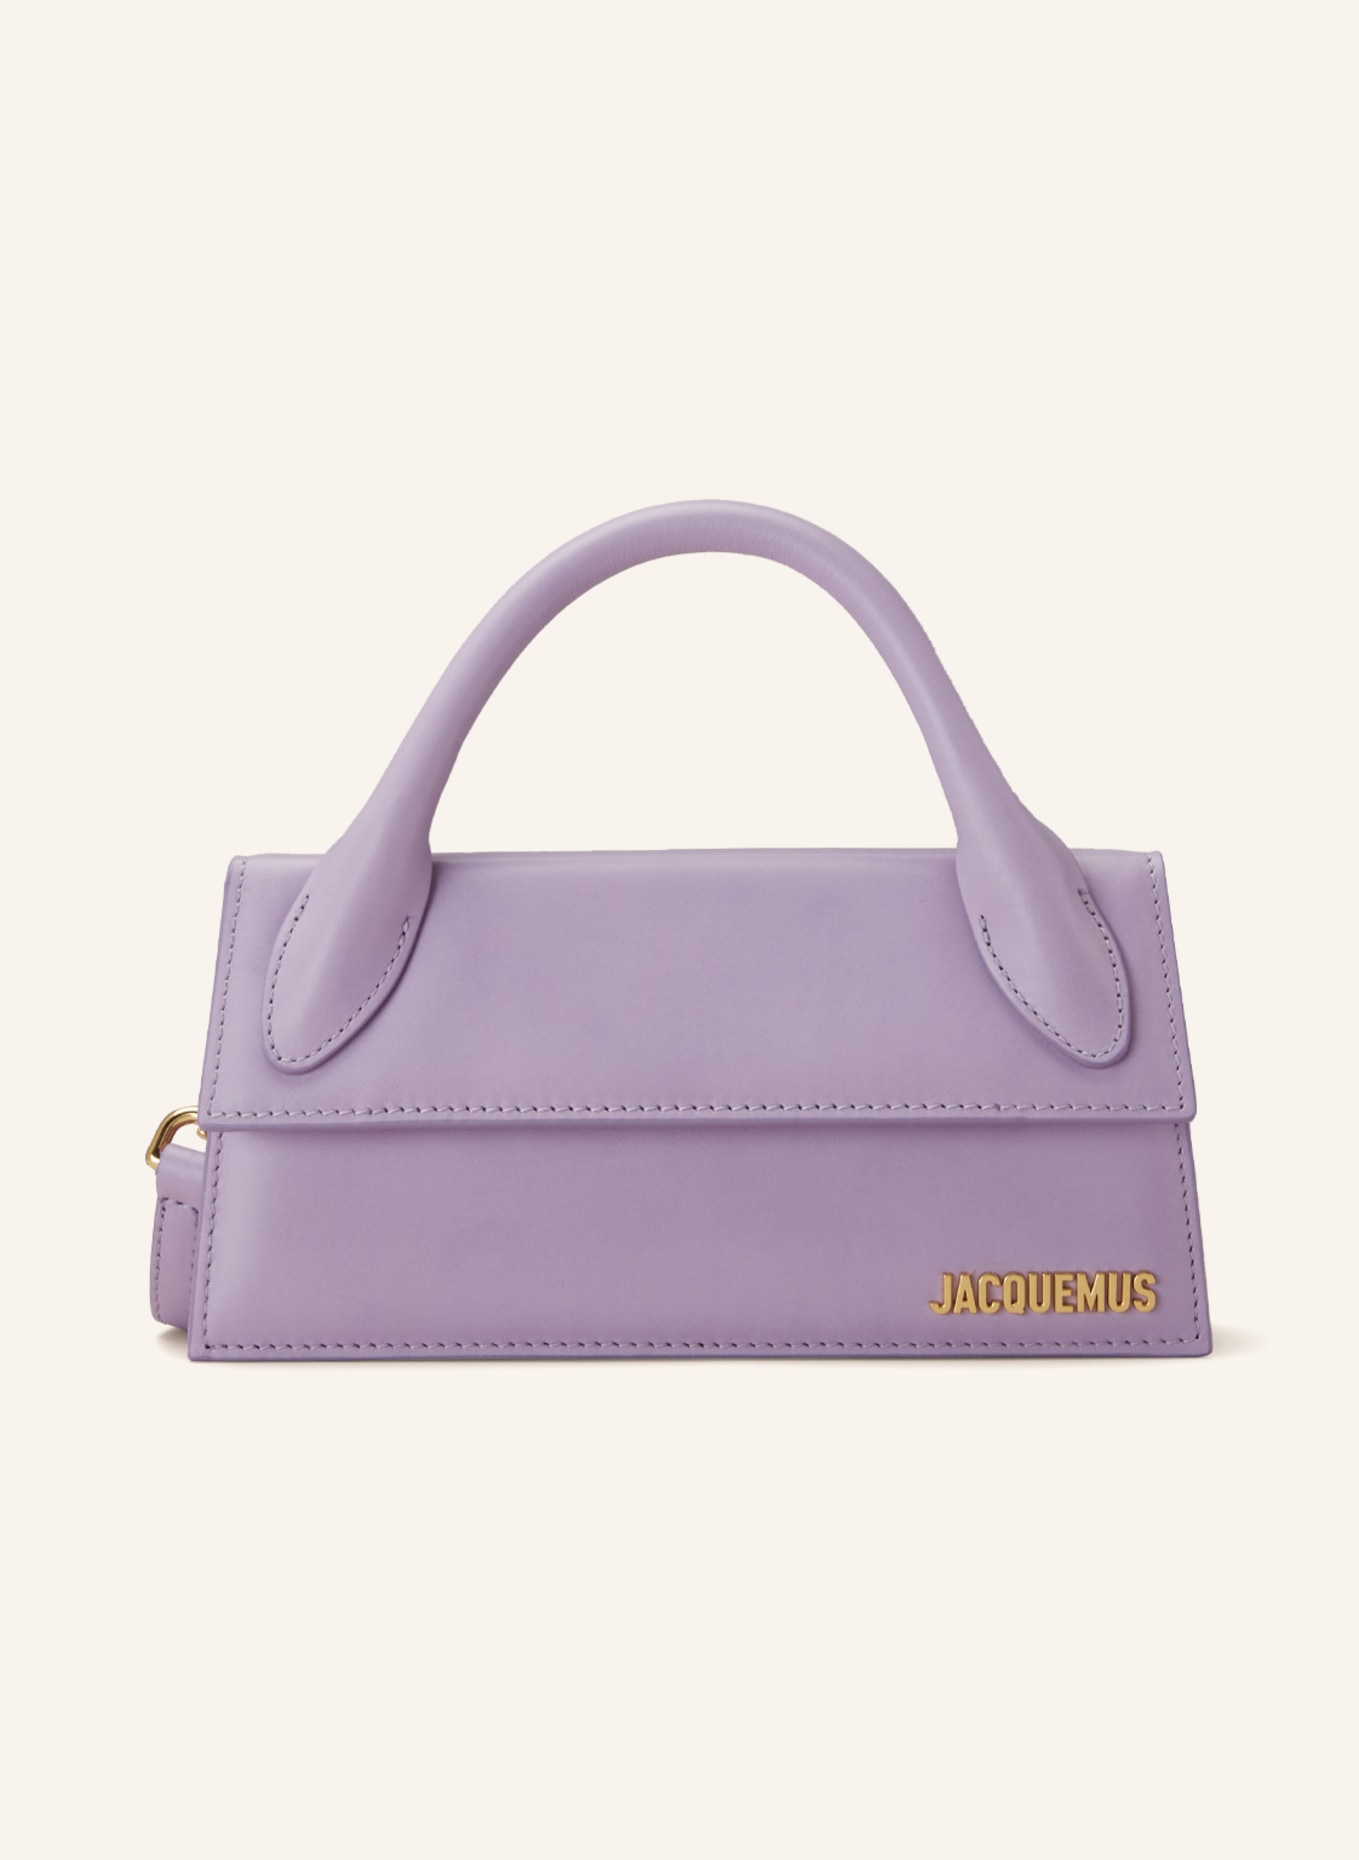 JACQUEMUS Handbag LE CHIQUITO LONG , Color: LIGHT PURPLE (Image 1)